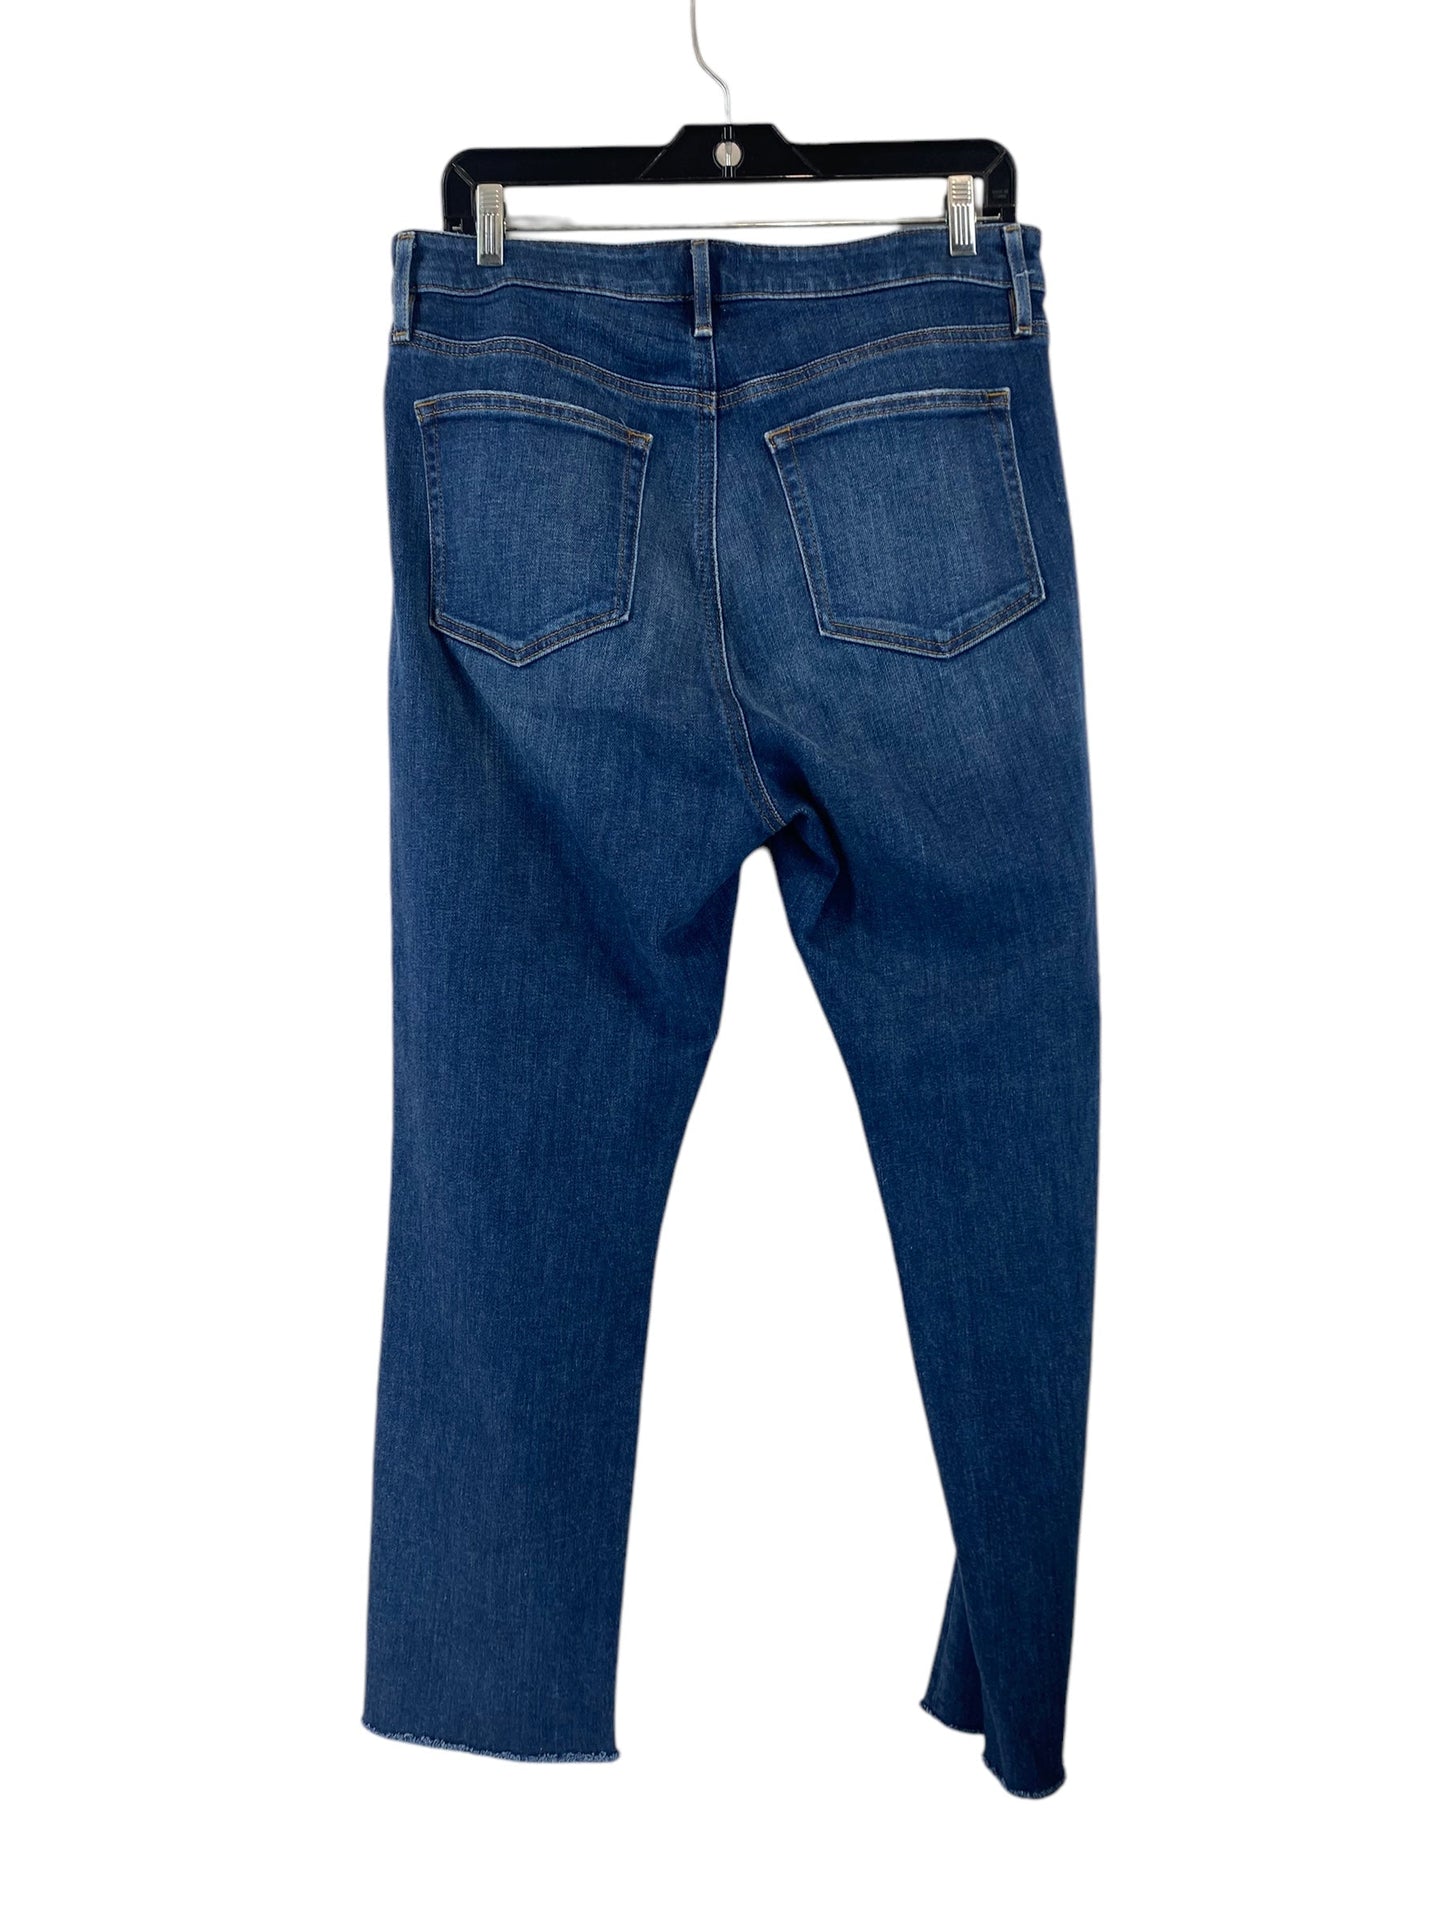 Jeans Cropped By Loft  Size: 10